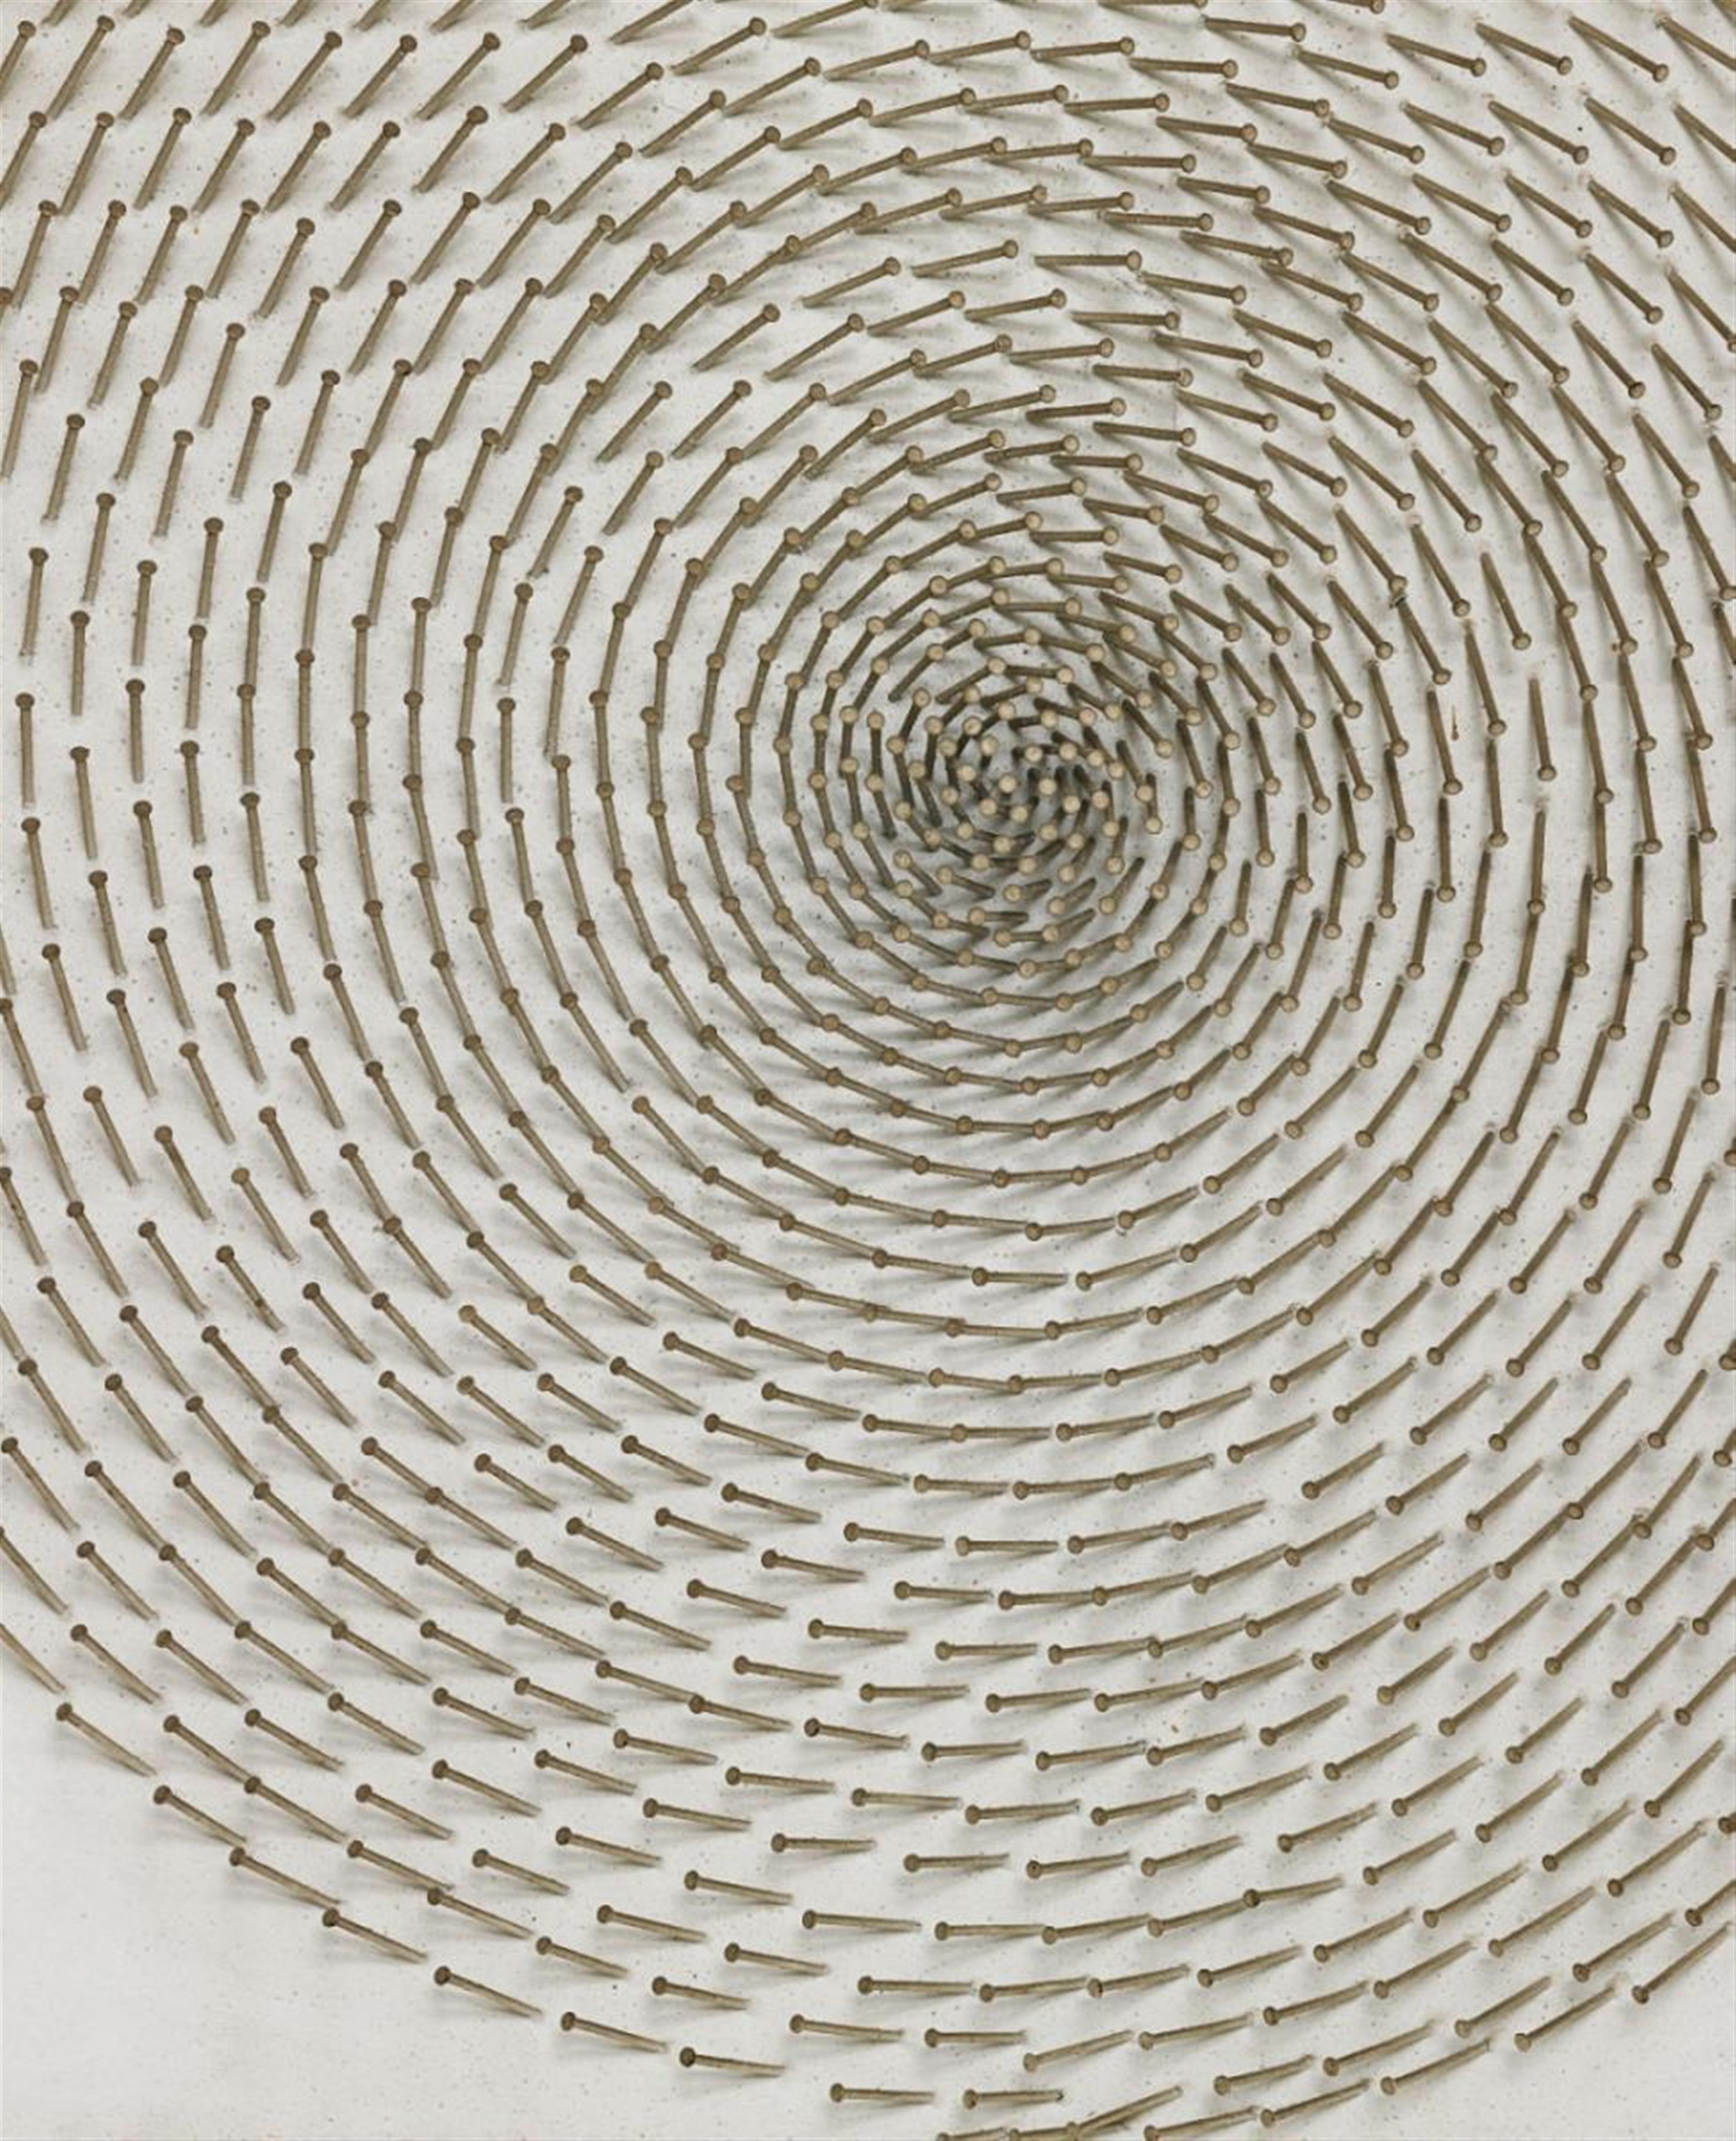 Günther Uecker - Spirale (Spiral) - image-2